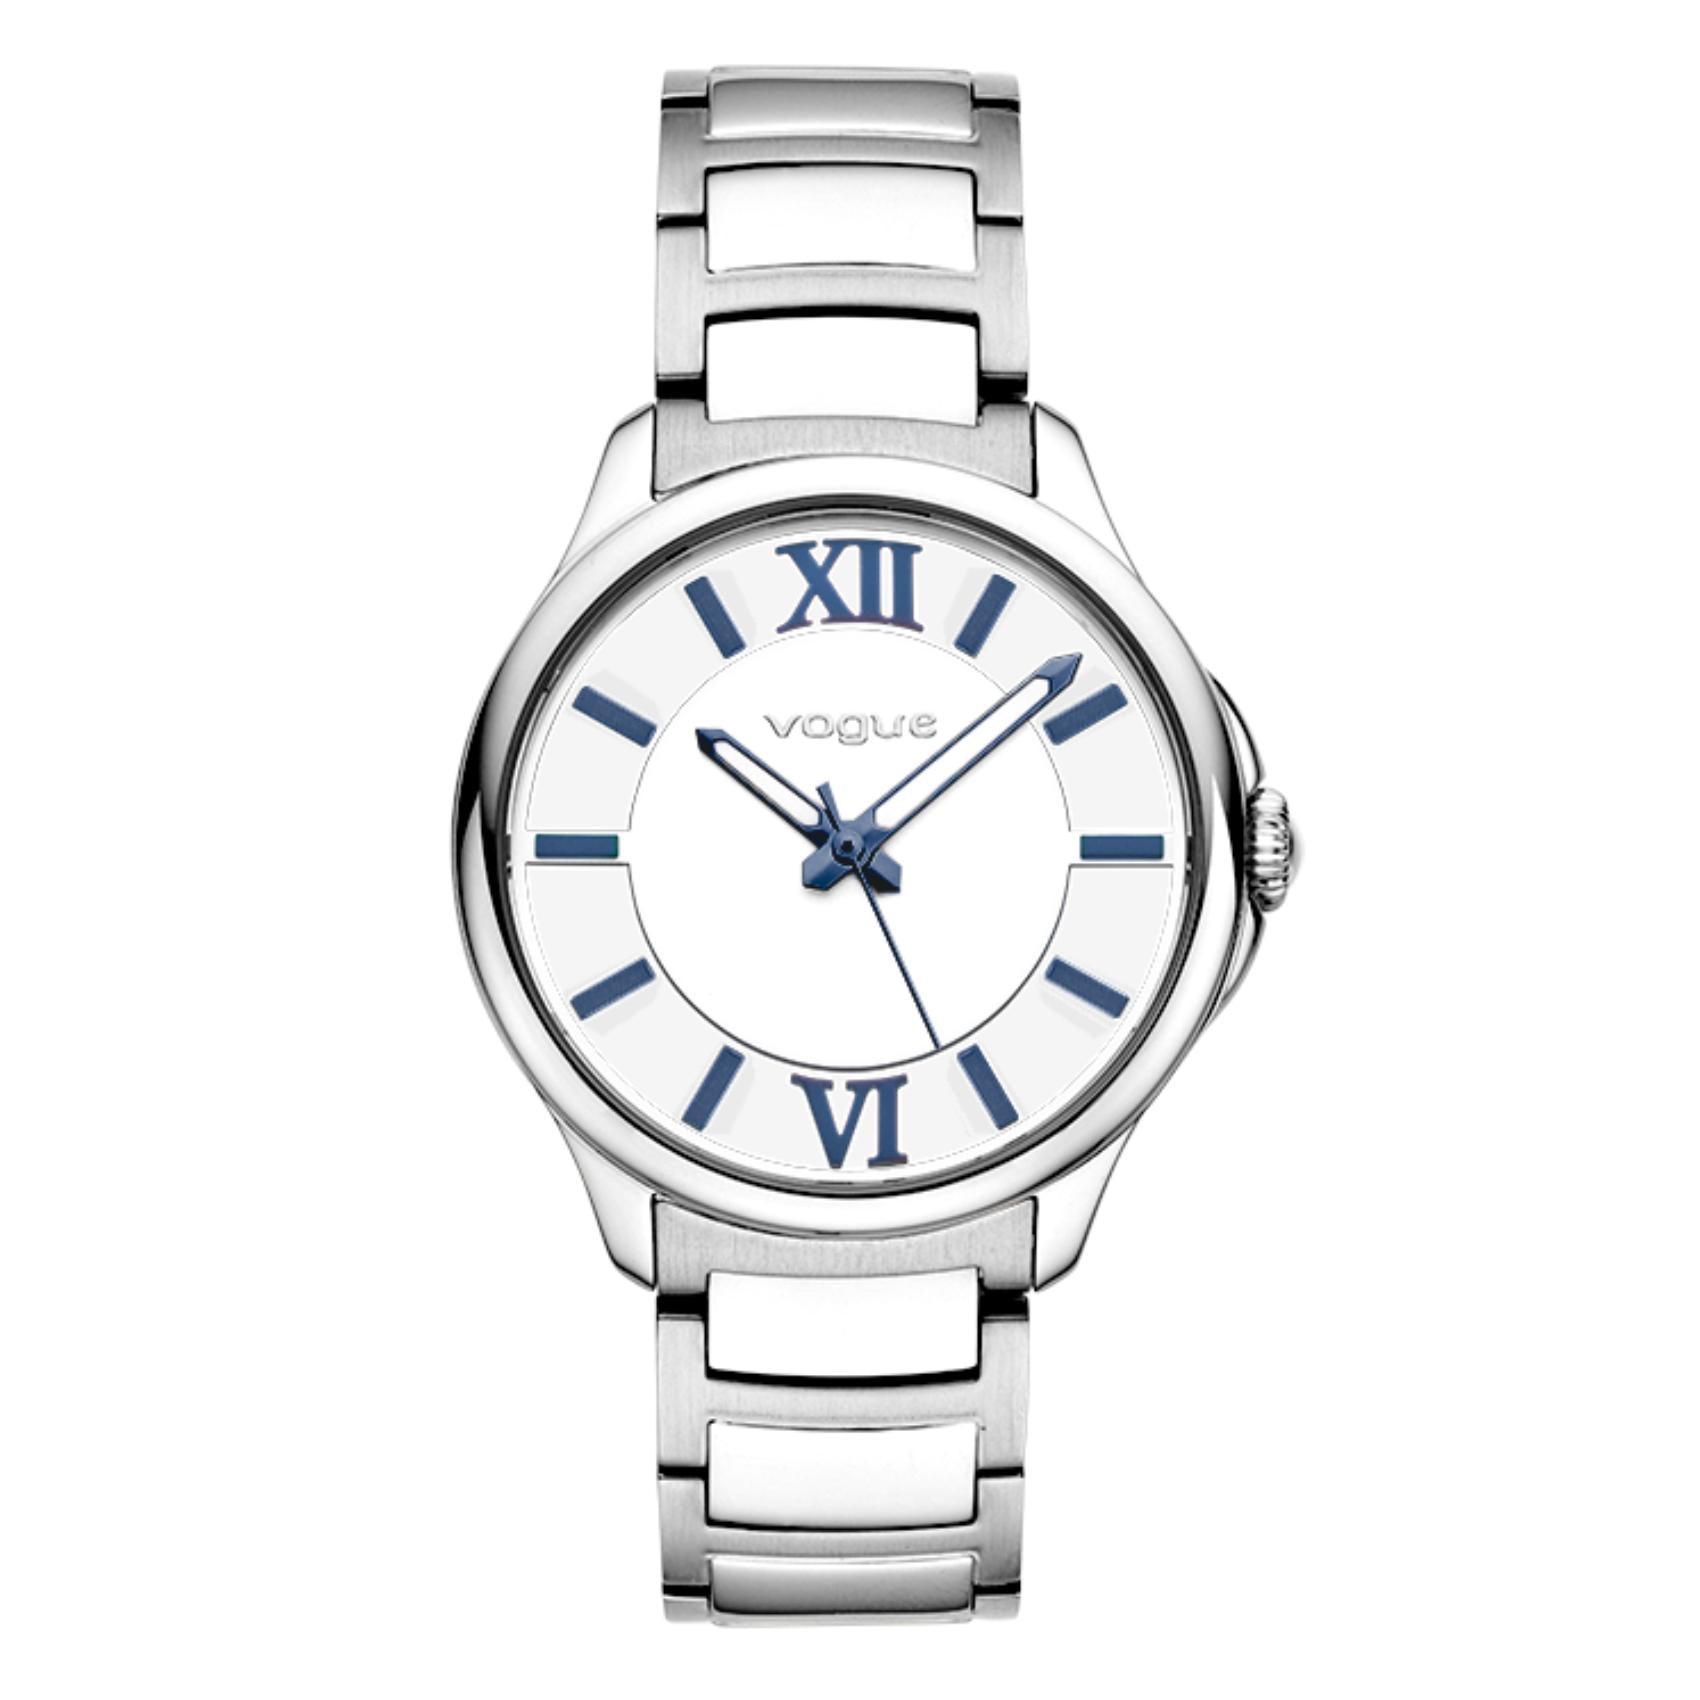 Γυναικείο ρολόι VOGUE Marilyn 2020613081 που συνδυάζει ασημί μπρασελέ από ανοξείδωτο ατσάλι, λευκό καντράν και μπλε δείκτες.